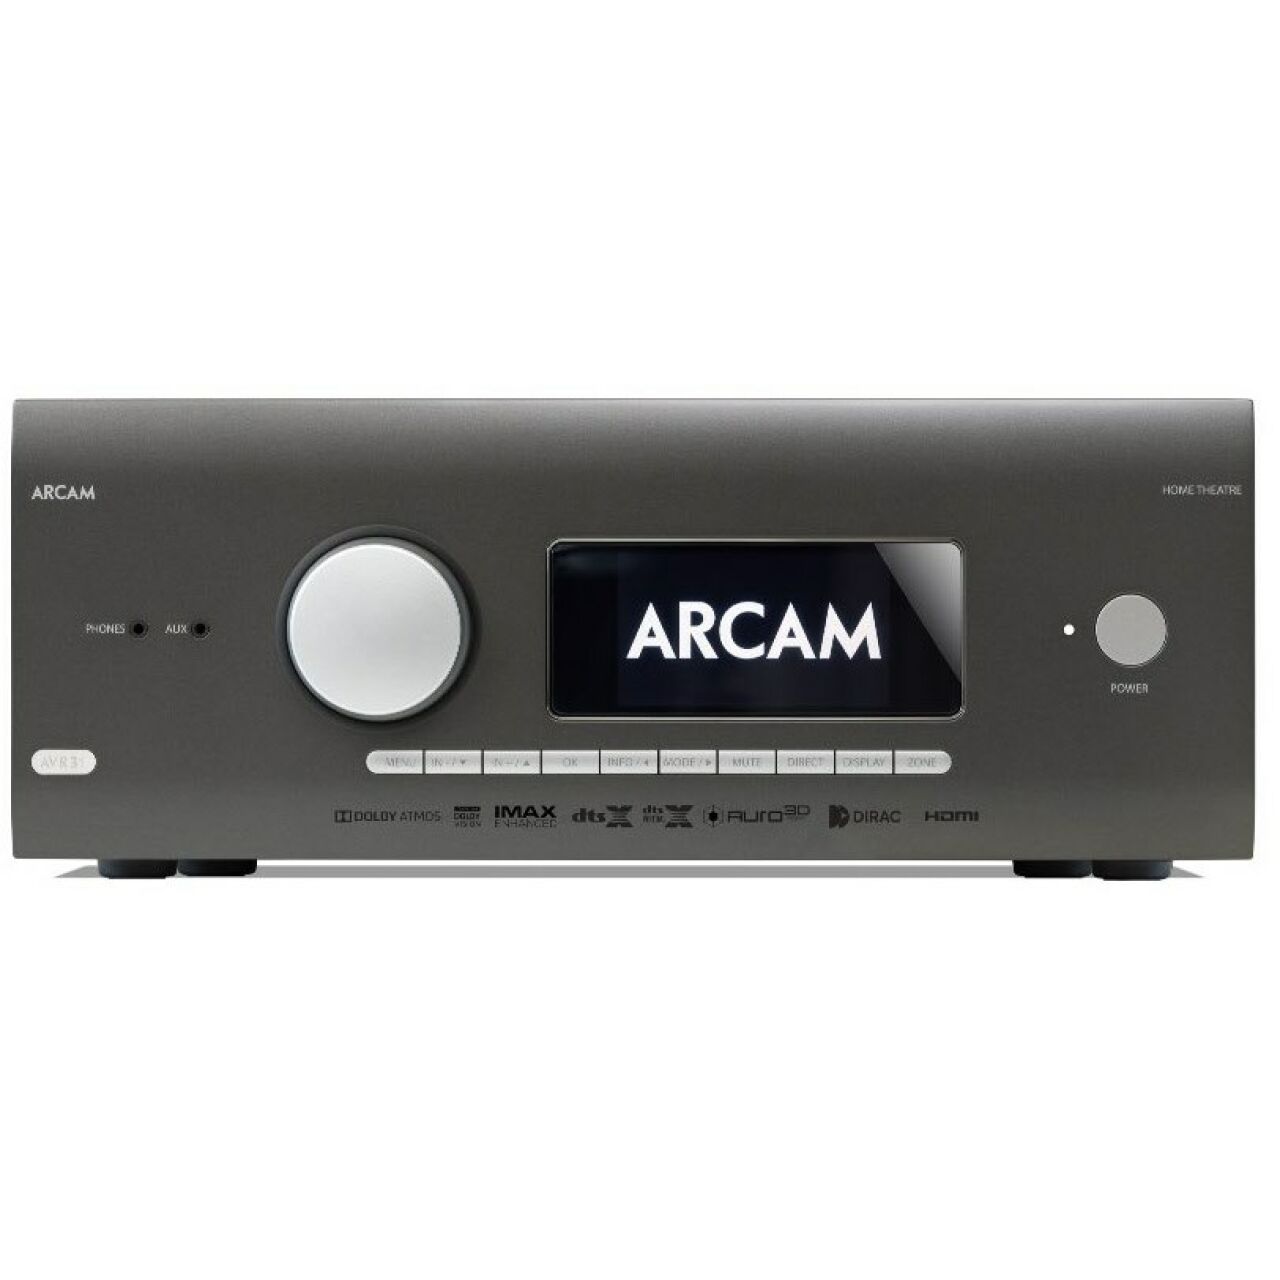 Arcam AVR31 AV Receiver Demo